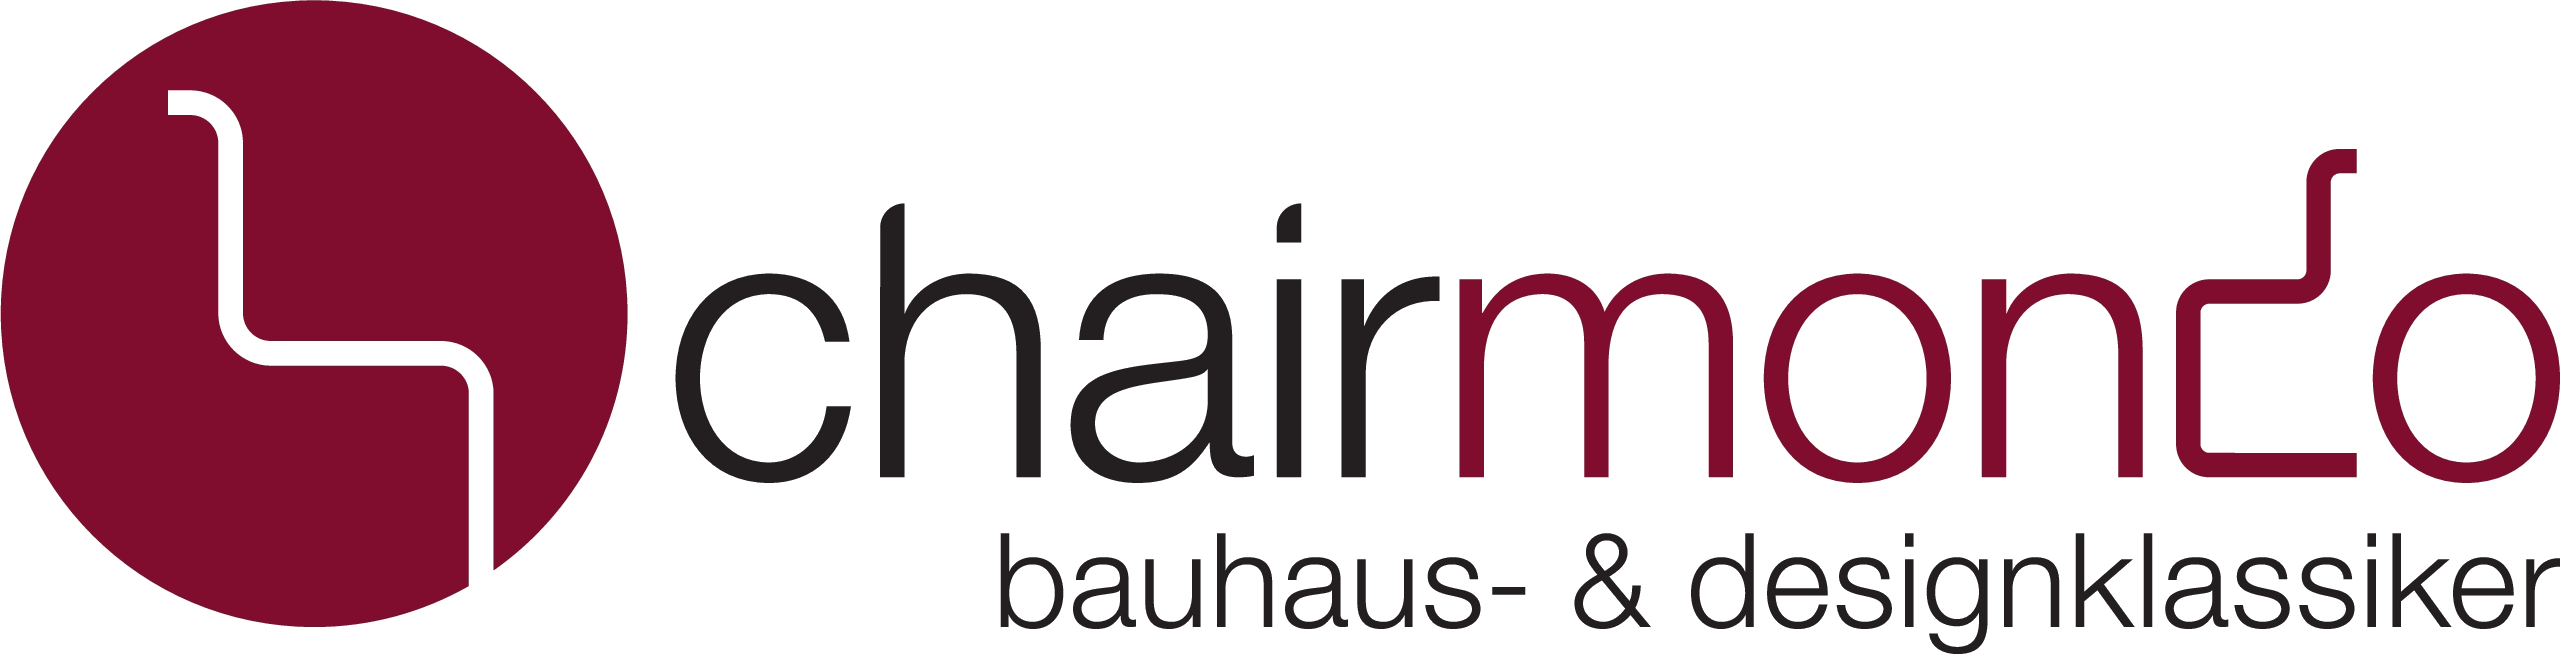 chairmondo shop - bauhaus- und designklassiker-Logo